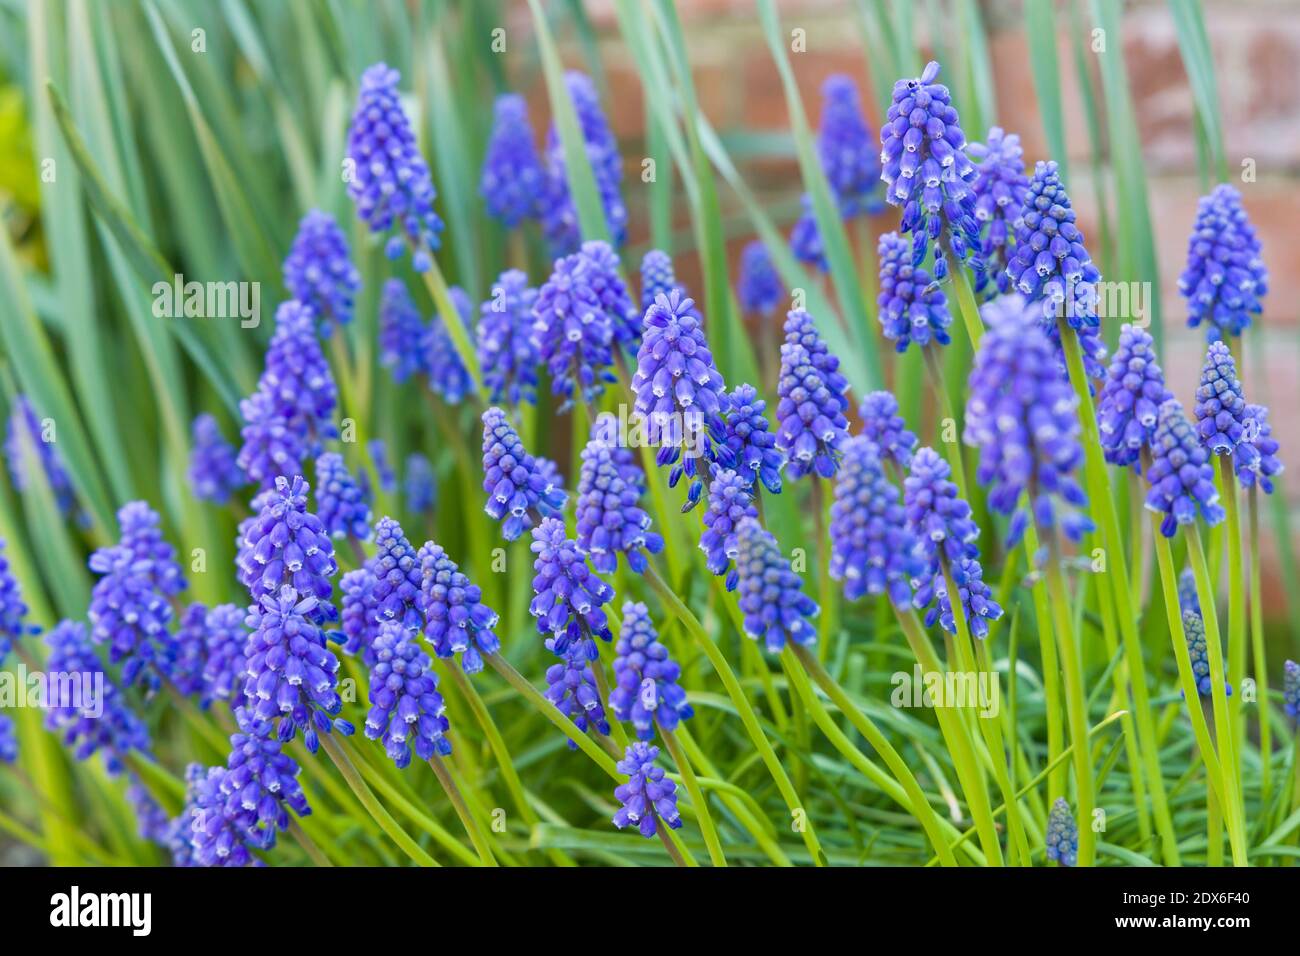 Muscari armeniacum primer plano, hiacintos de uva azul armenio primer plano, flores de primavera en flor, Reino Unido Foto de stock